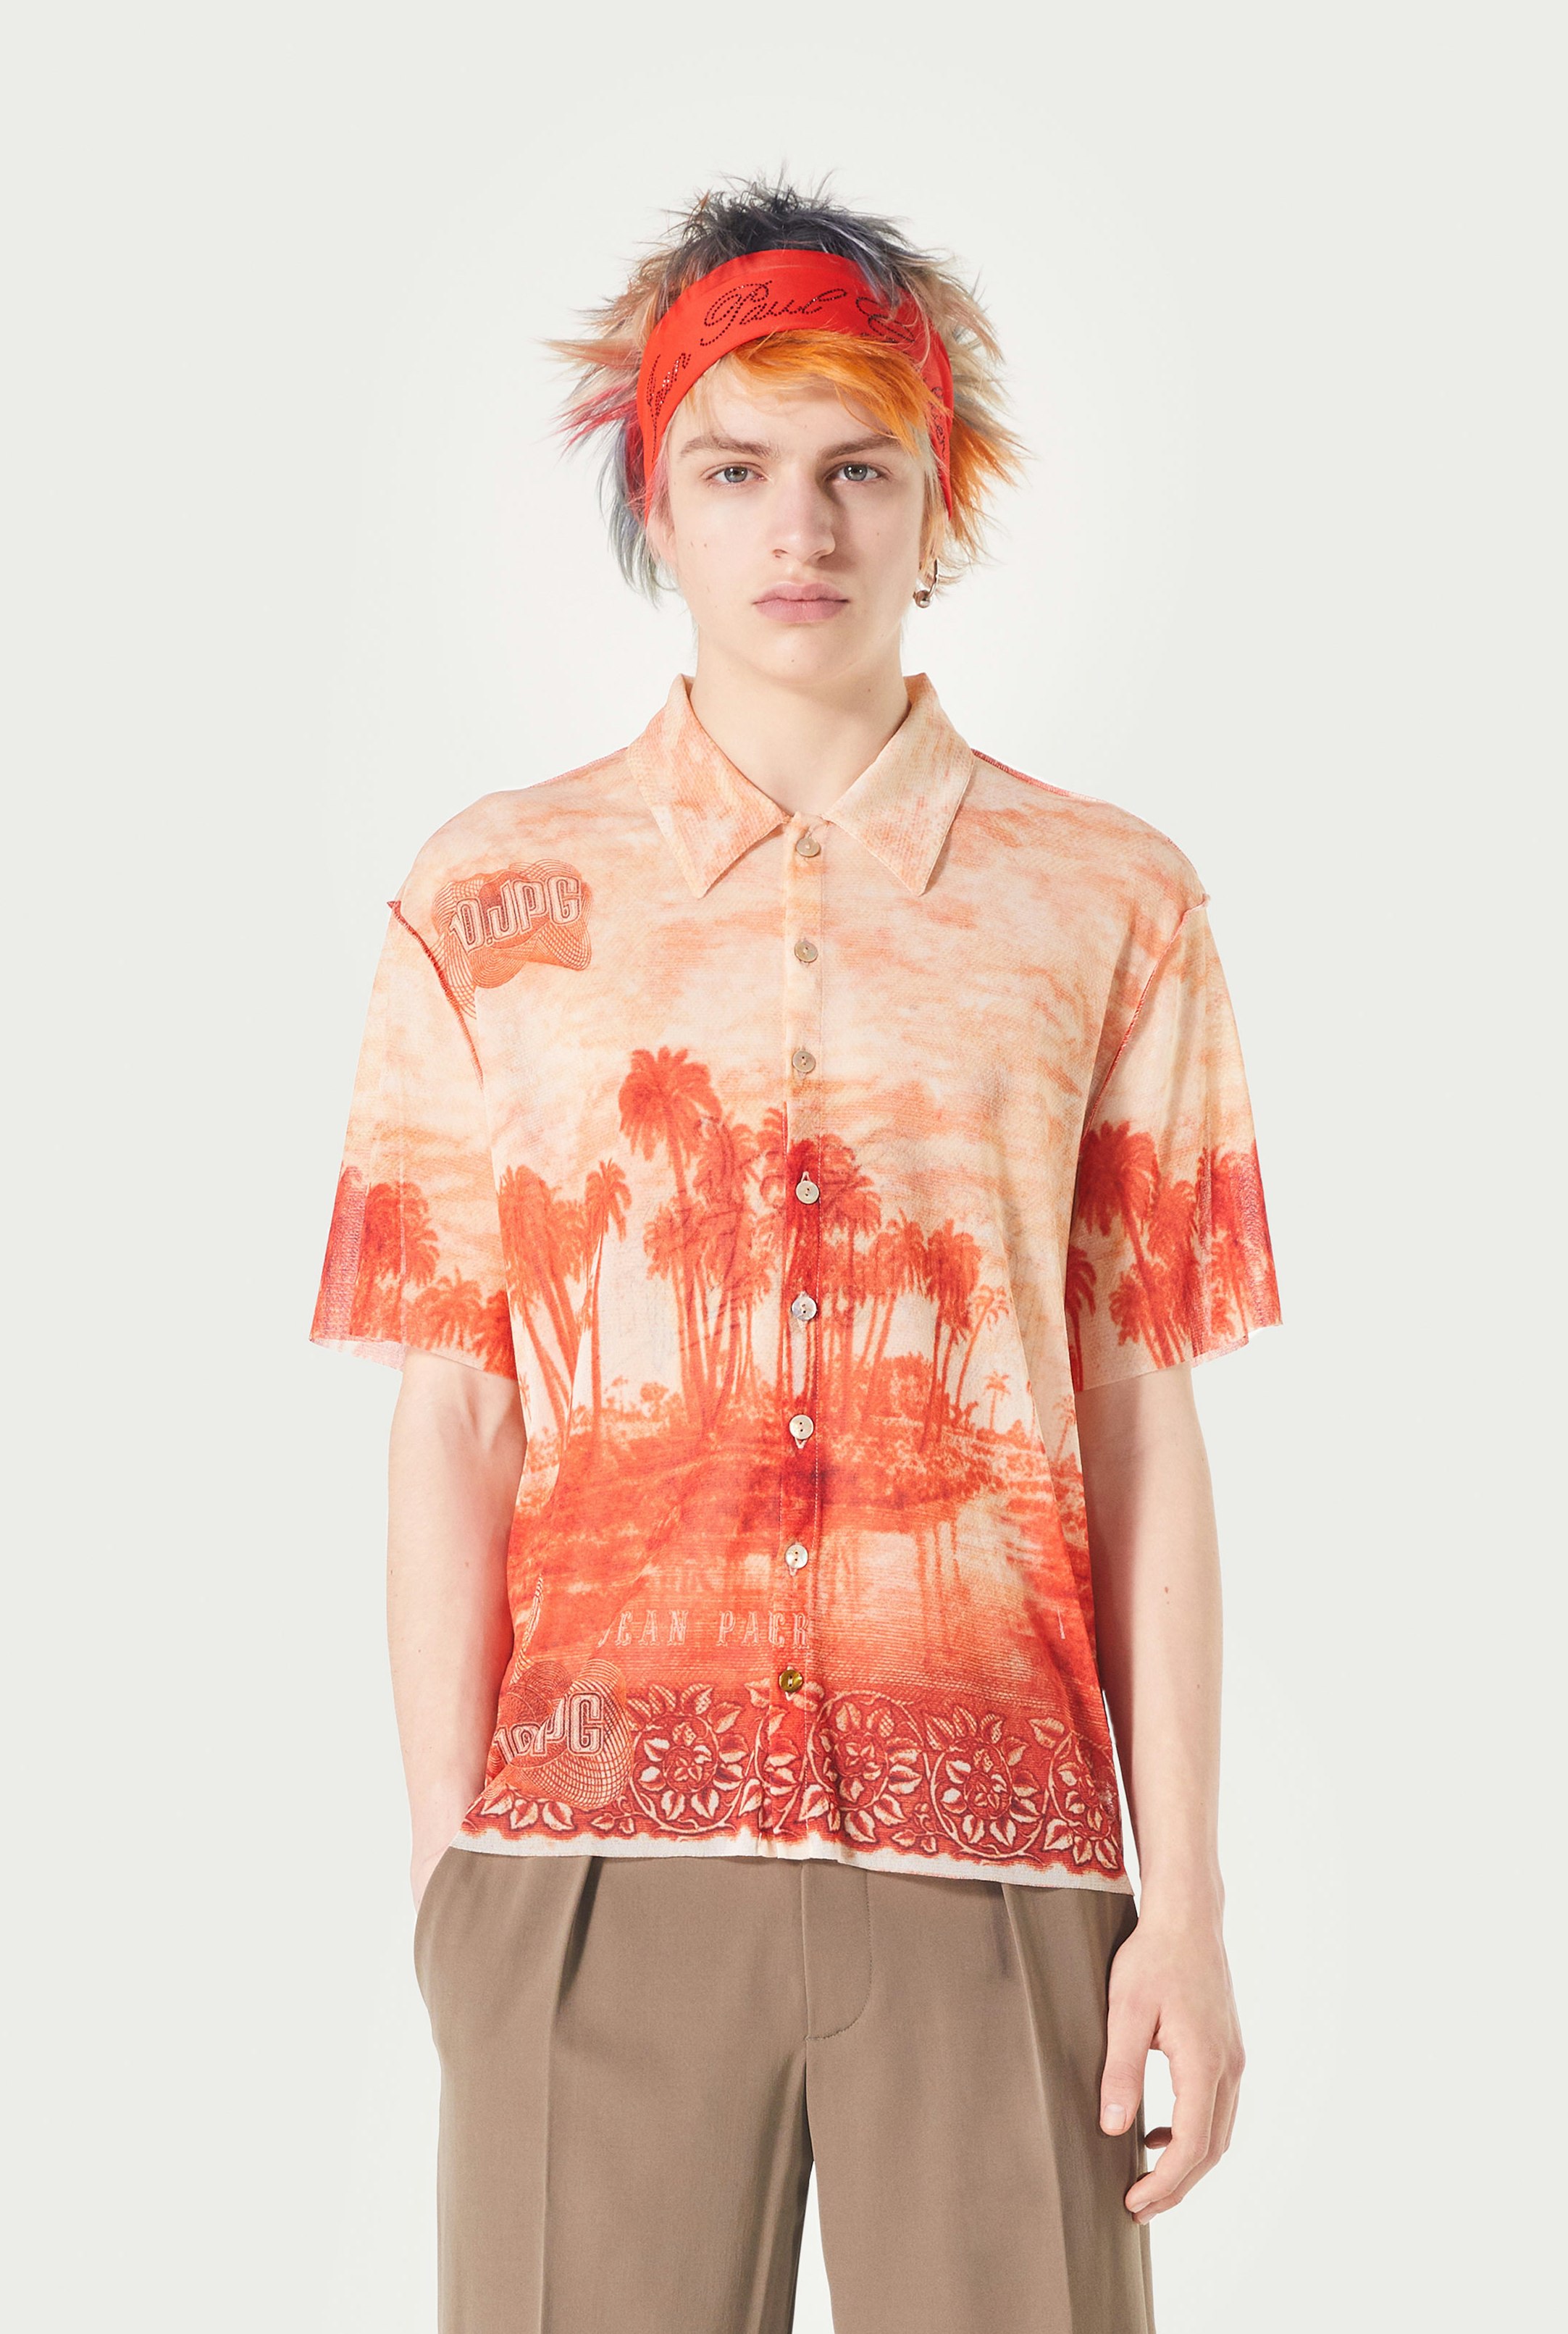 The Palm Tree Summer Shirt Jean Paul Gaultier